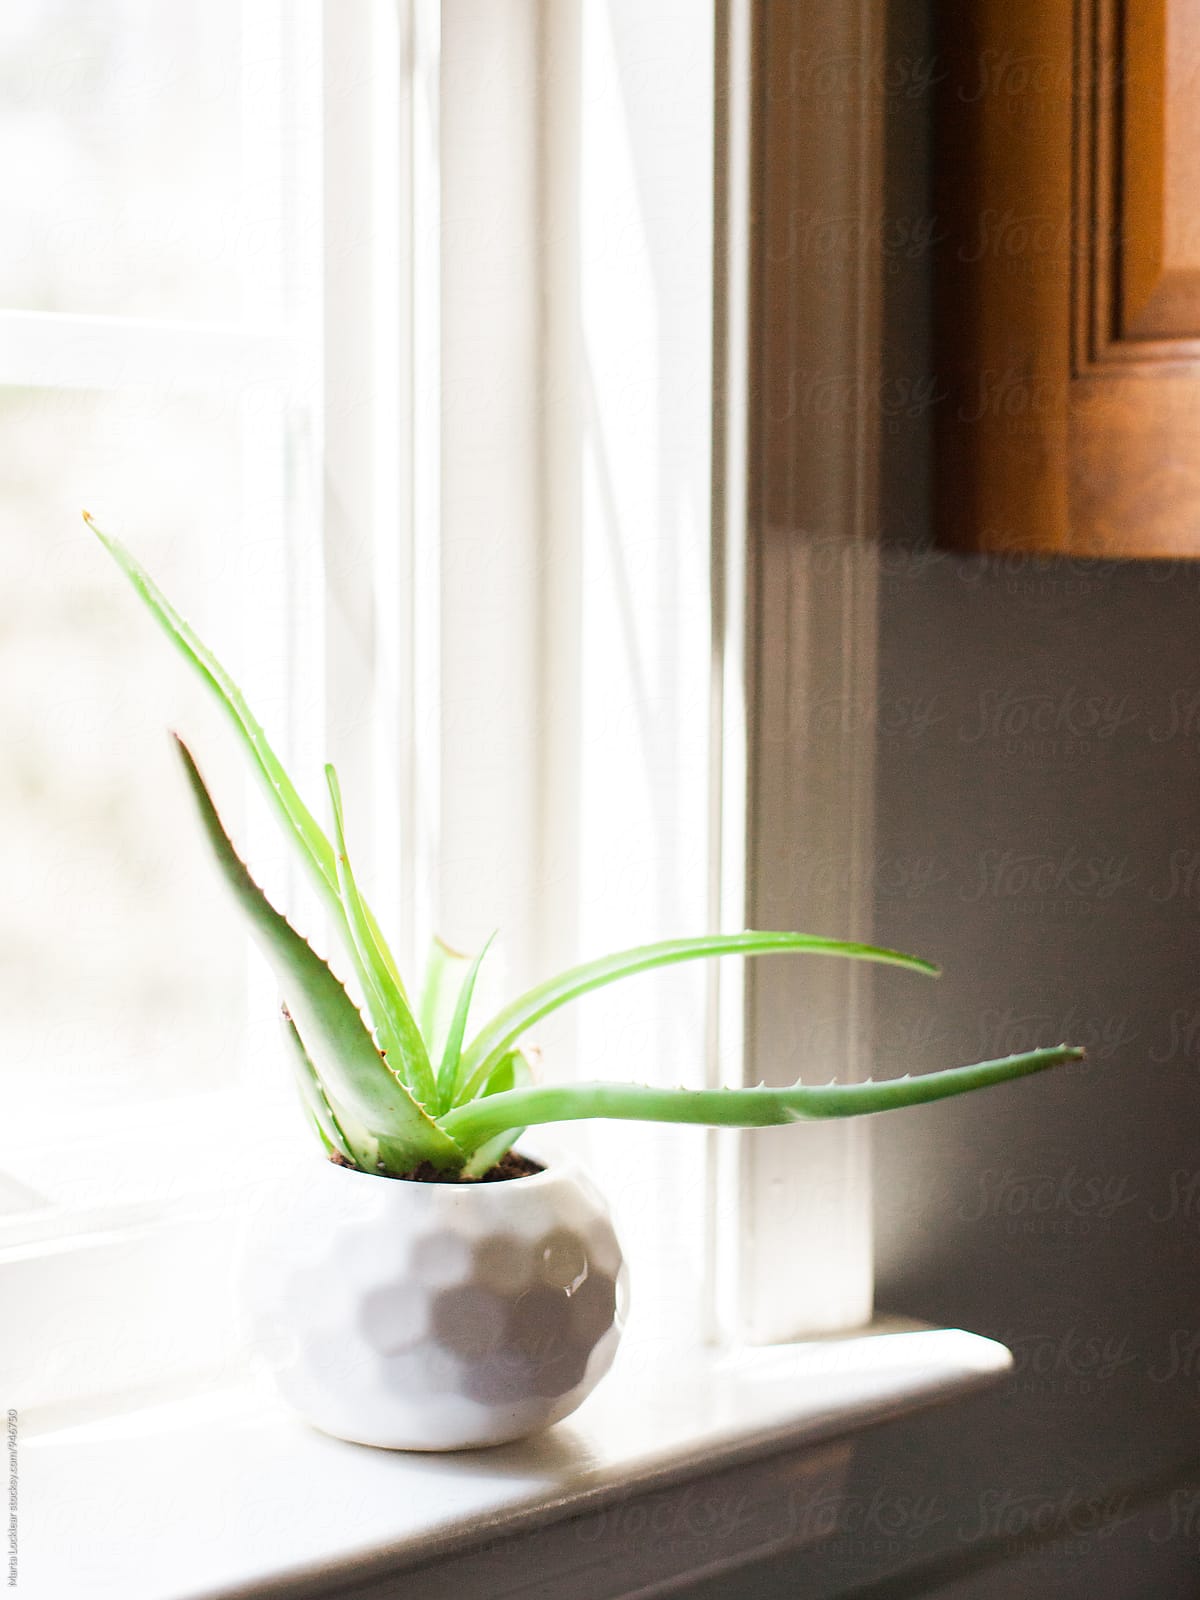 Aloe plant in window sill